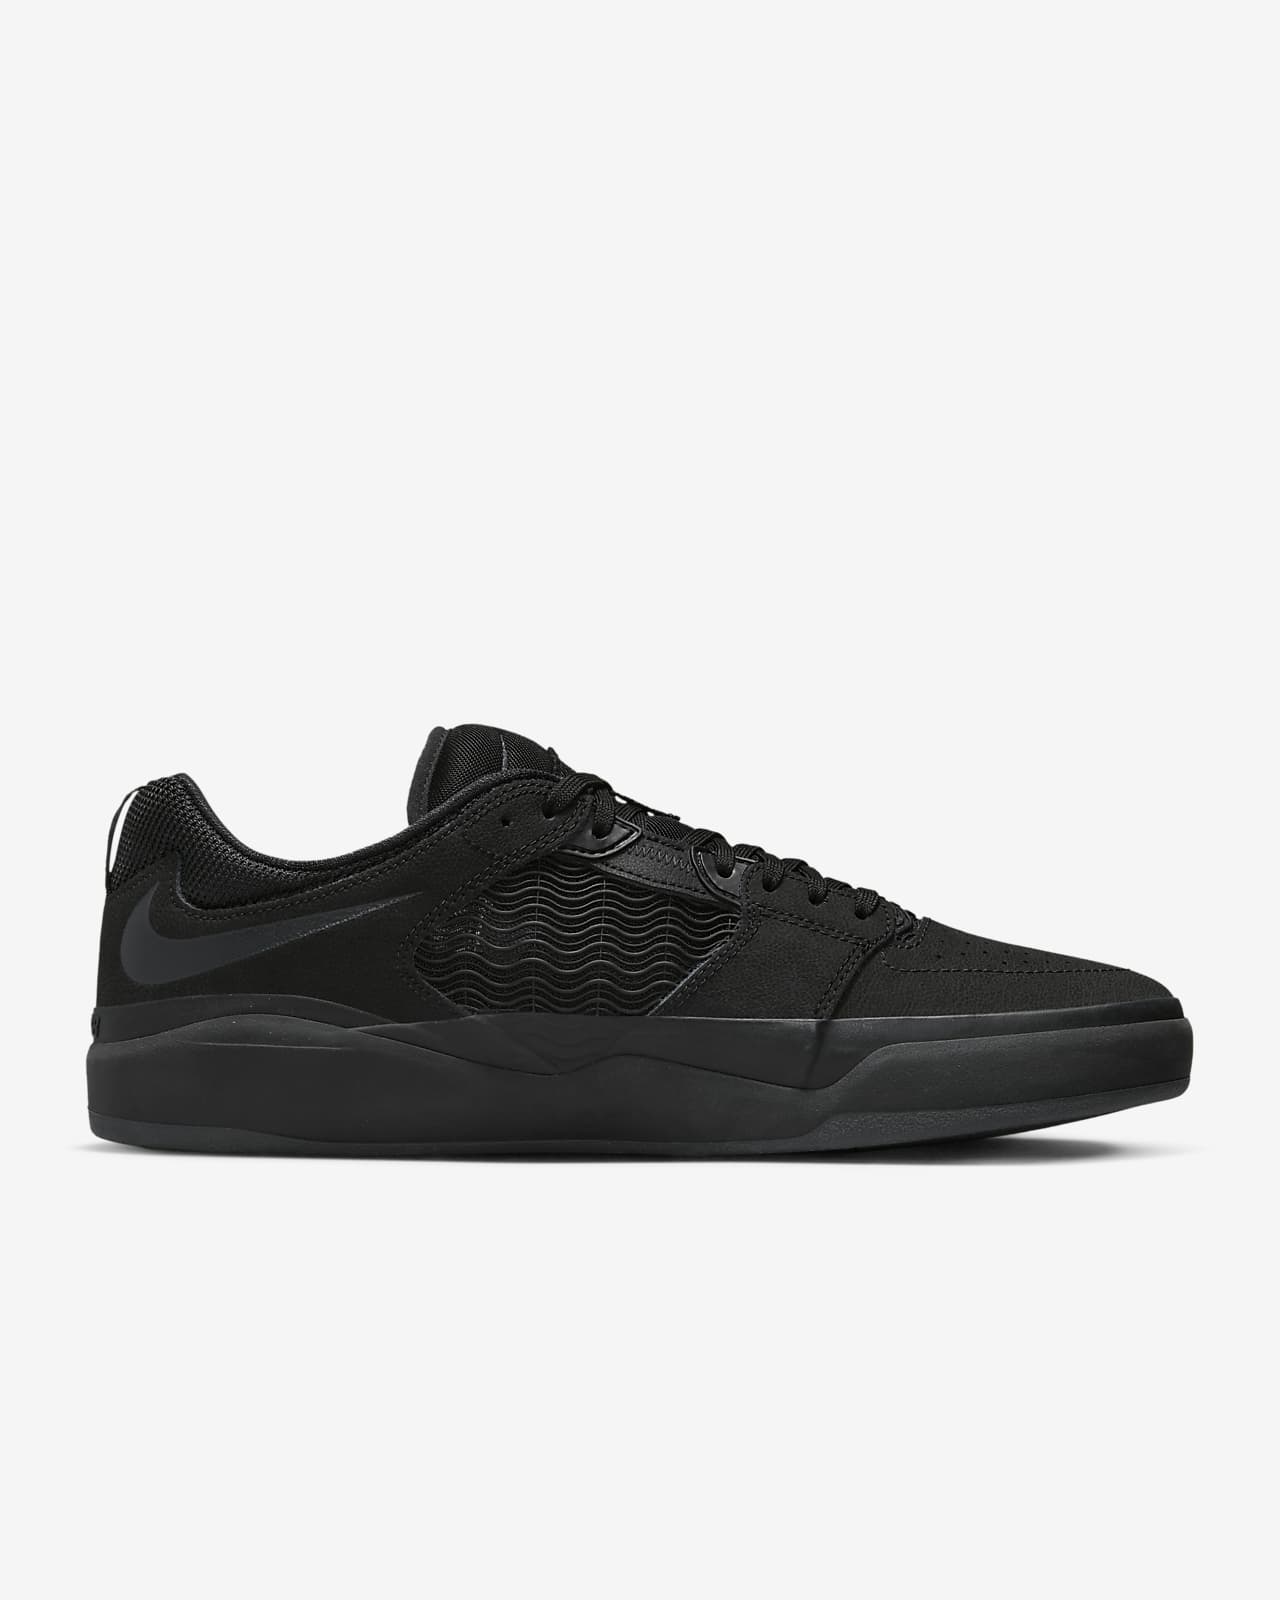 sanar alquitrán personalizado Nike SB Ishod Wair Premium Zapatillas de skateboard - Hombre. Nike ES